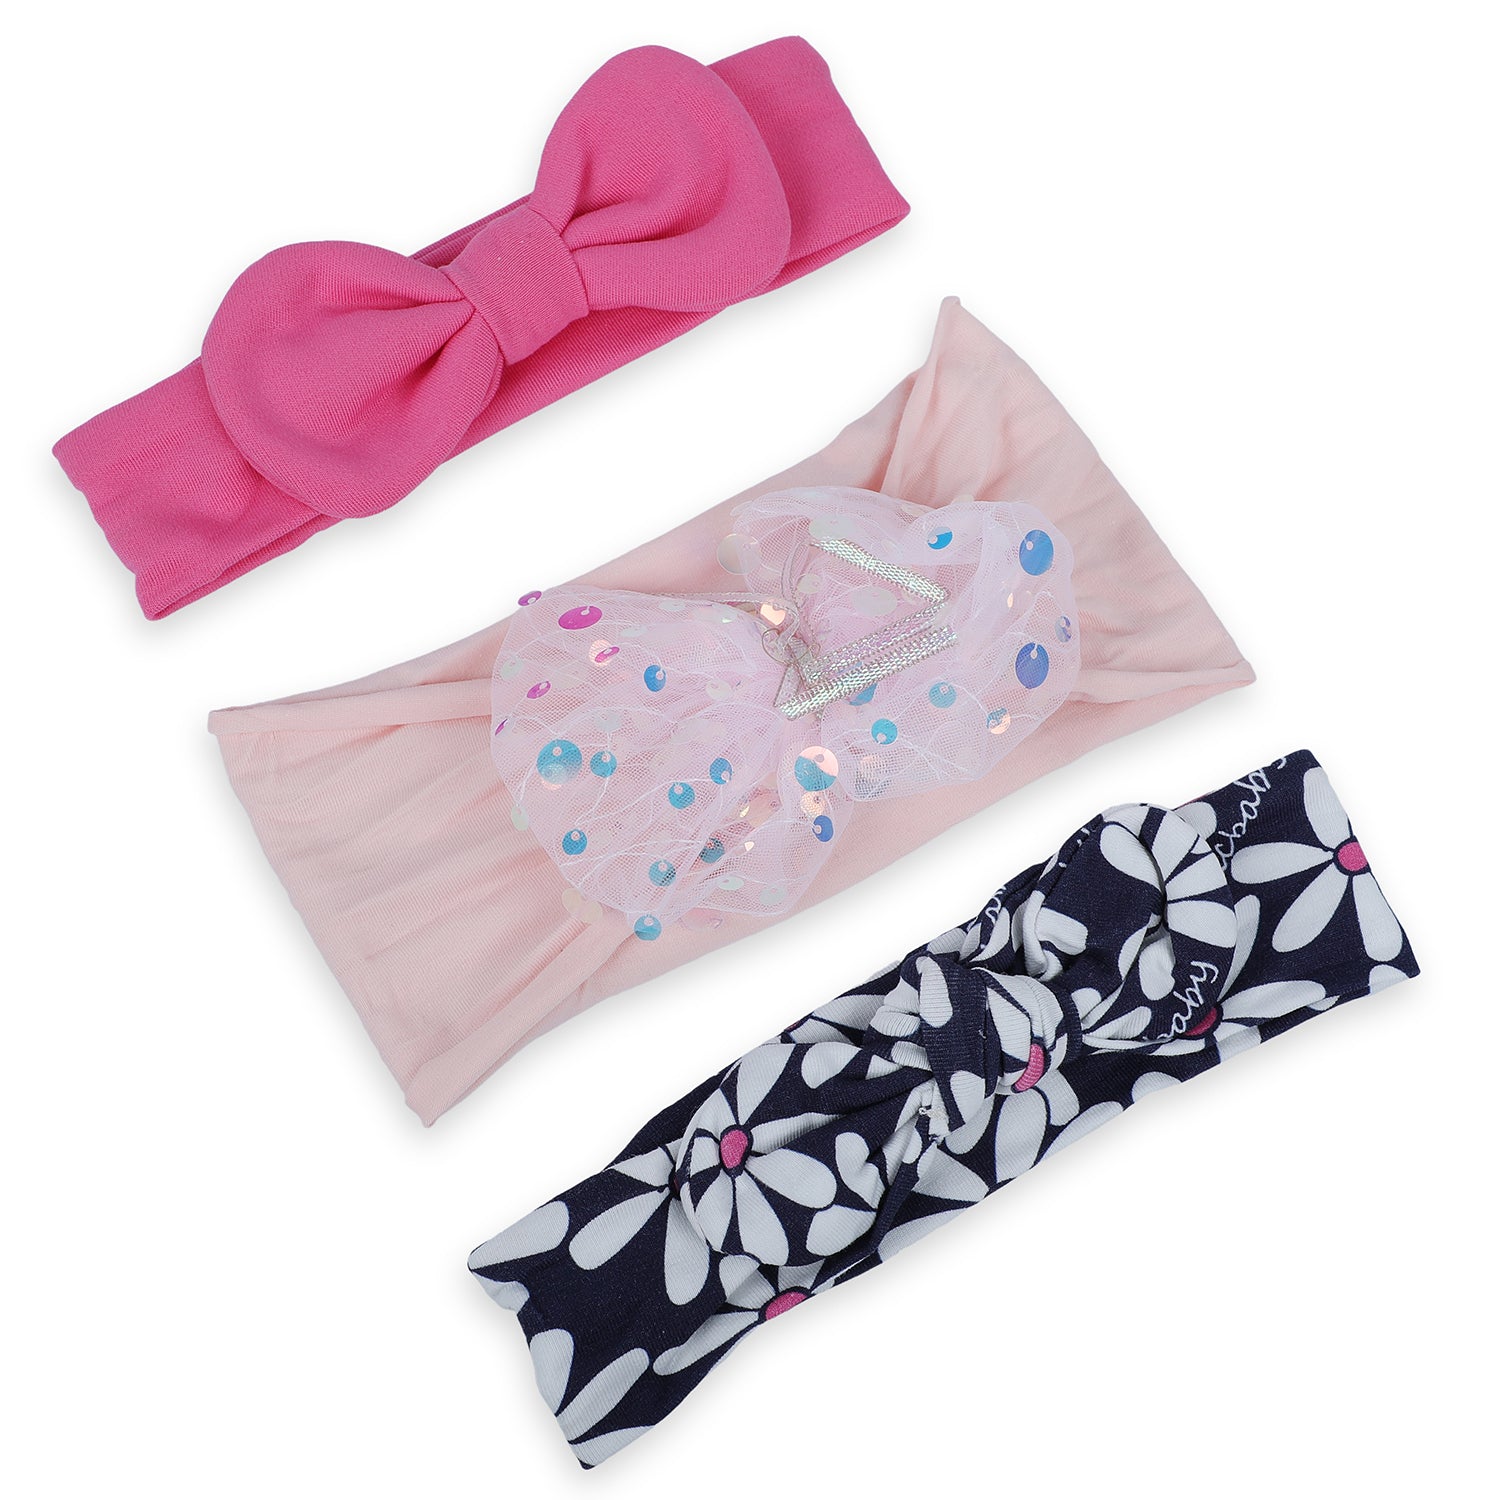 Baby Moo Shiny Bow Headband Set of 3 - Pink - Baby Moo